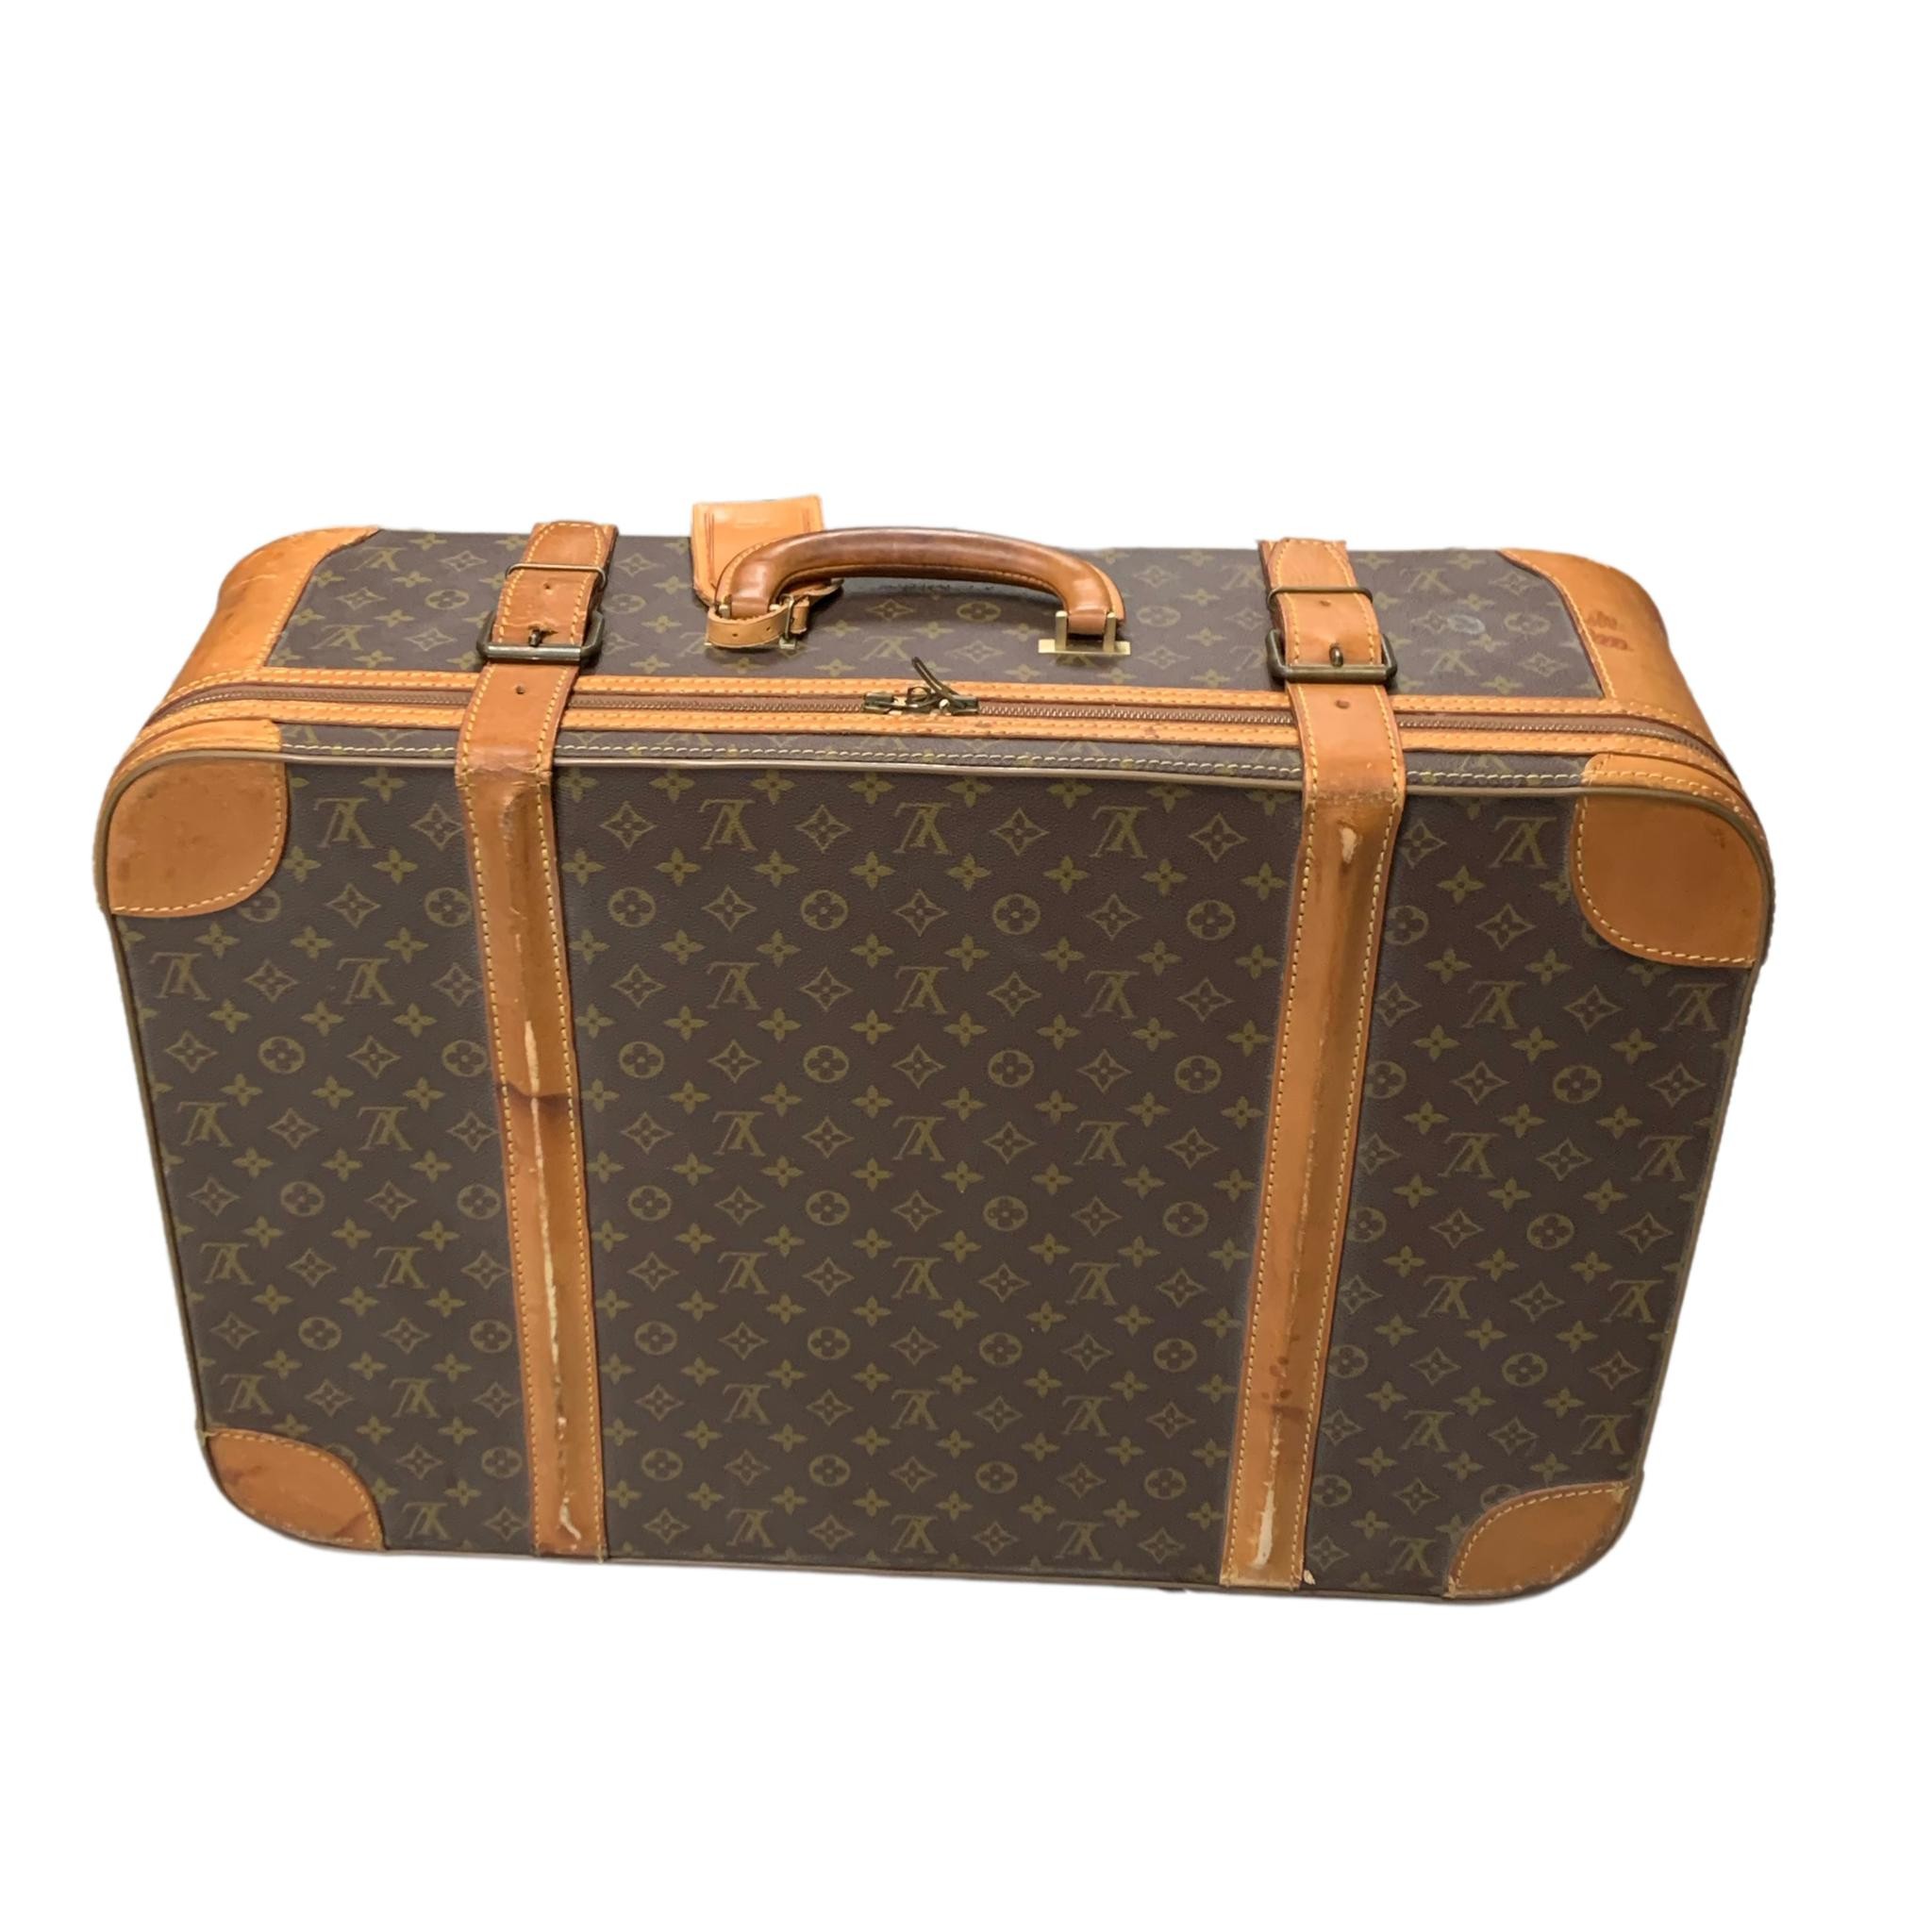 10 meilleures idées sur valise louis vuitton